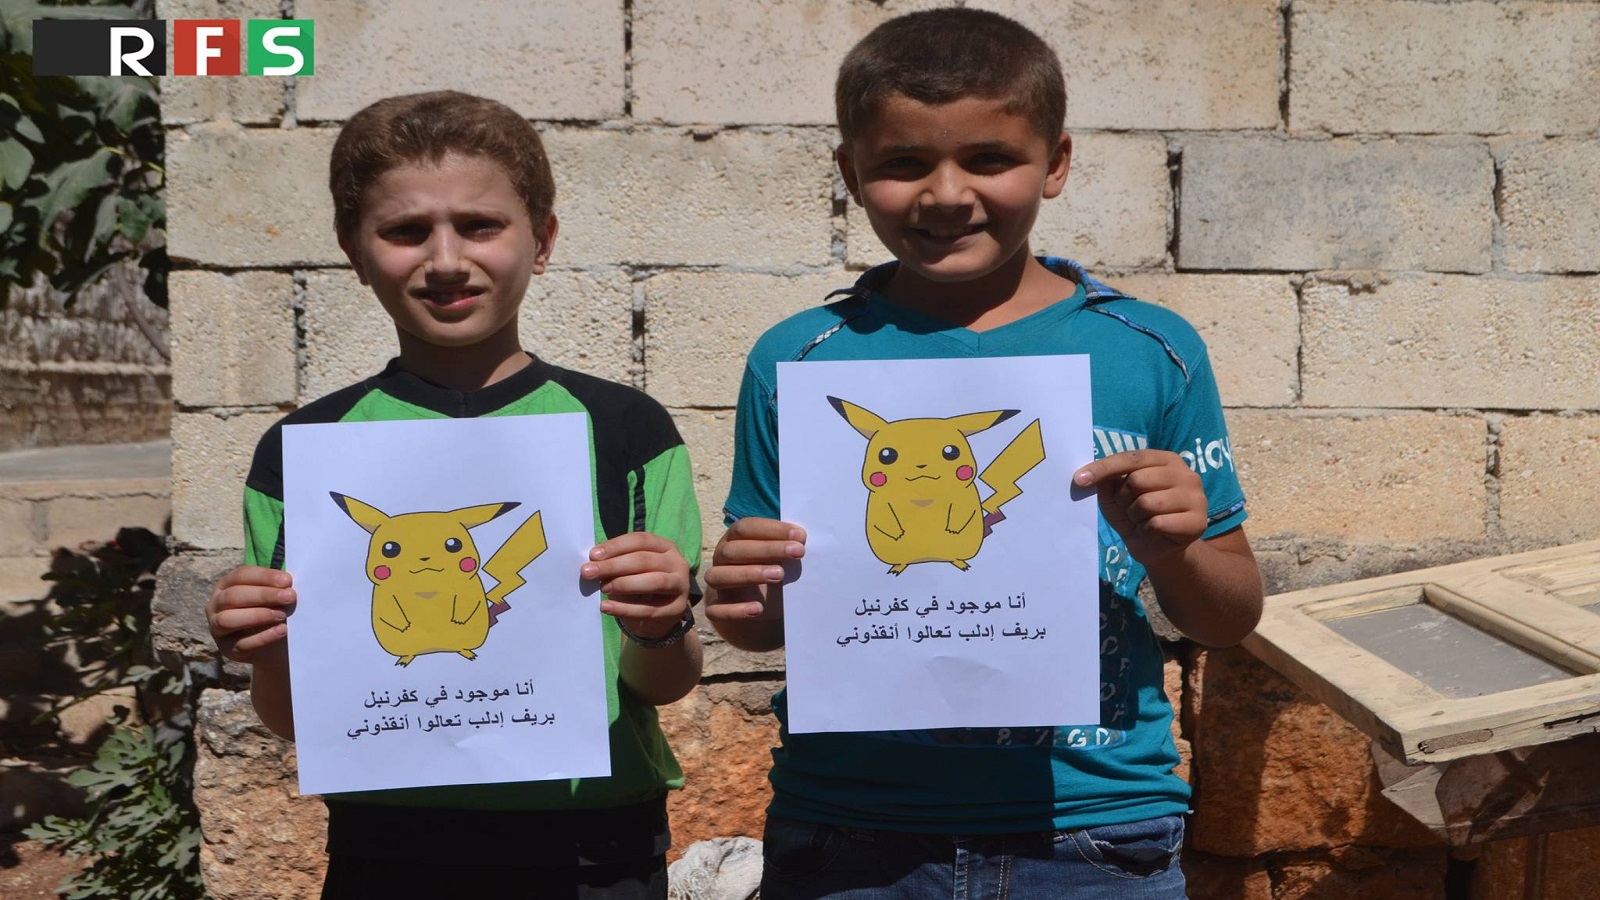 من رسوم نشرها "الائتلاف" لحملوة "يوكيمون سوريا"